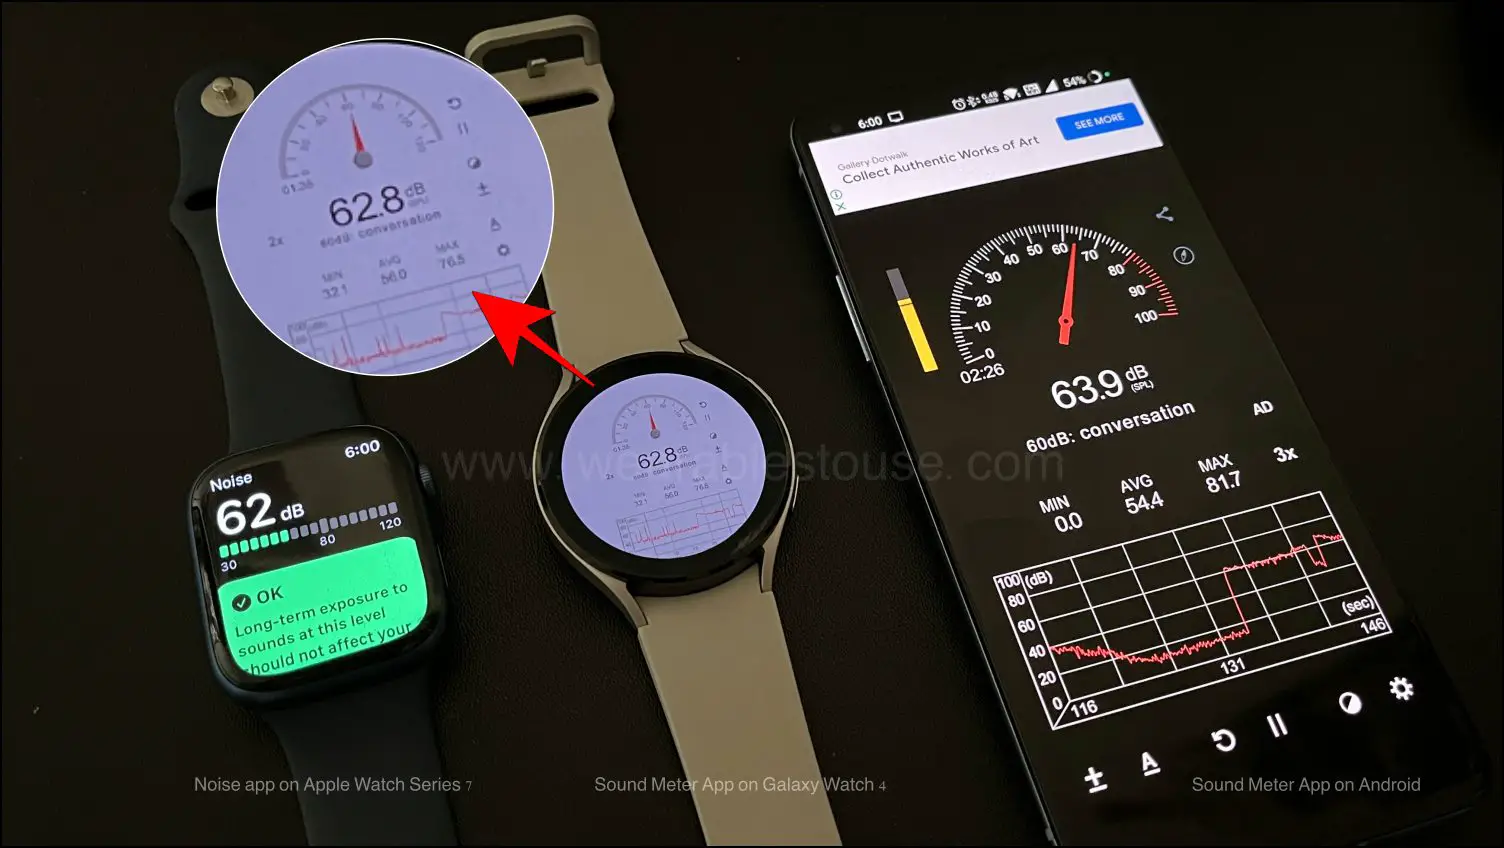 Measure Noise Levels on Galaxy Watch 4 vs Apple Watch